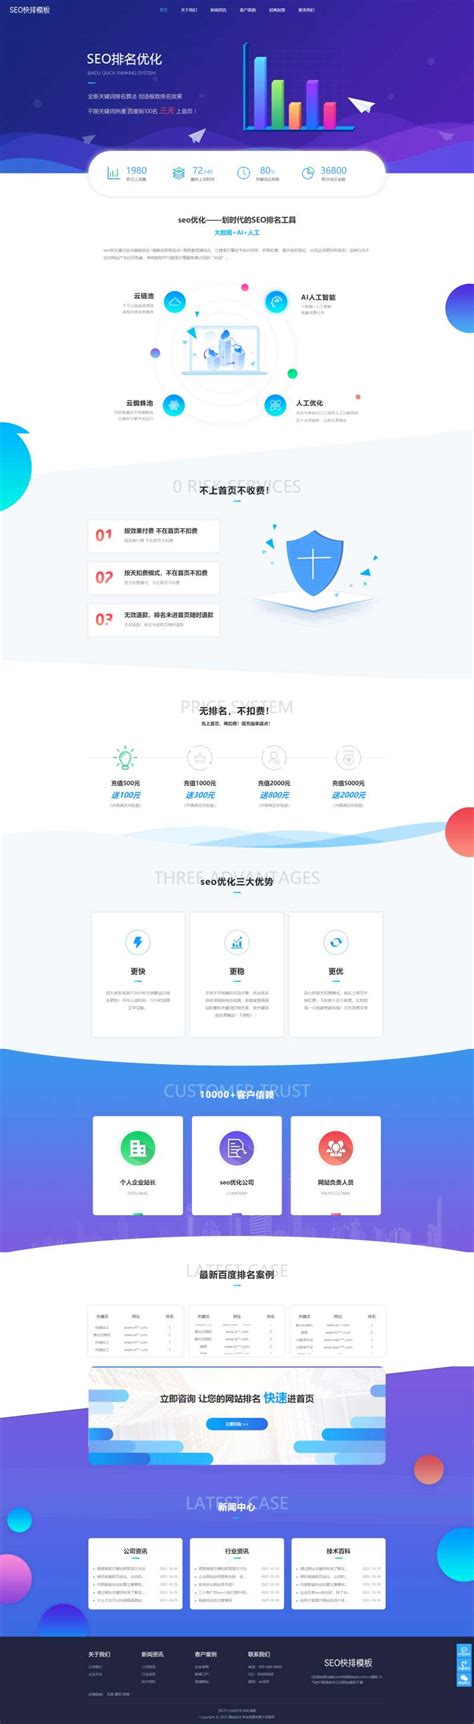 小黄人seo招代理啦，提供域名即可运营自己的seo平台功能-未来可期SEO